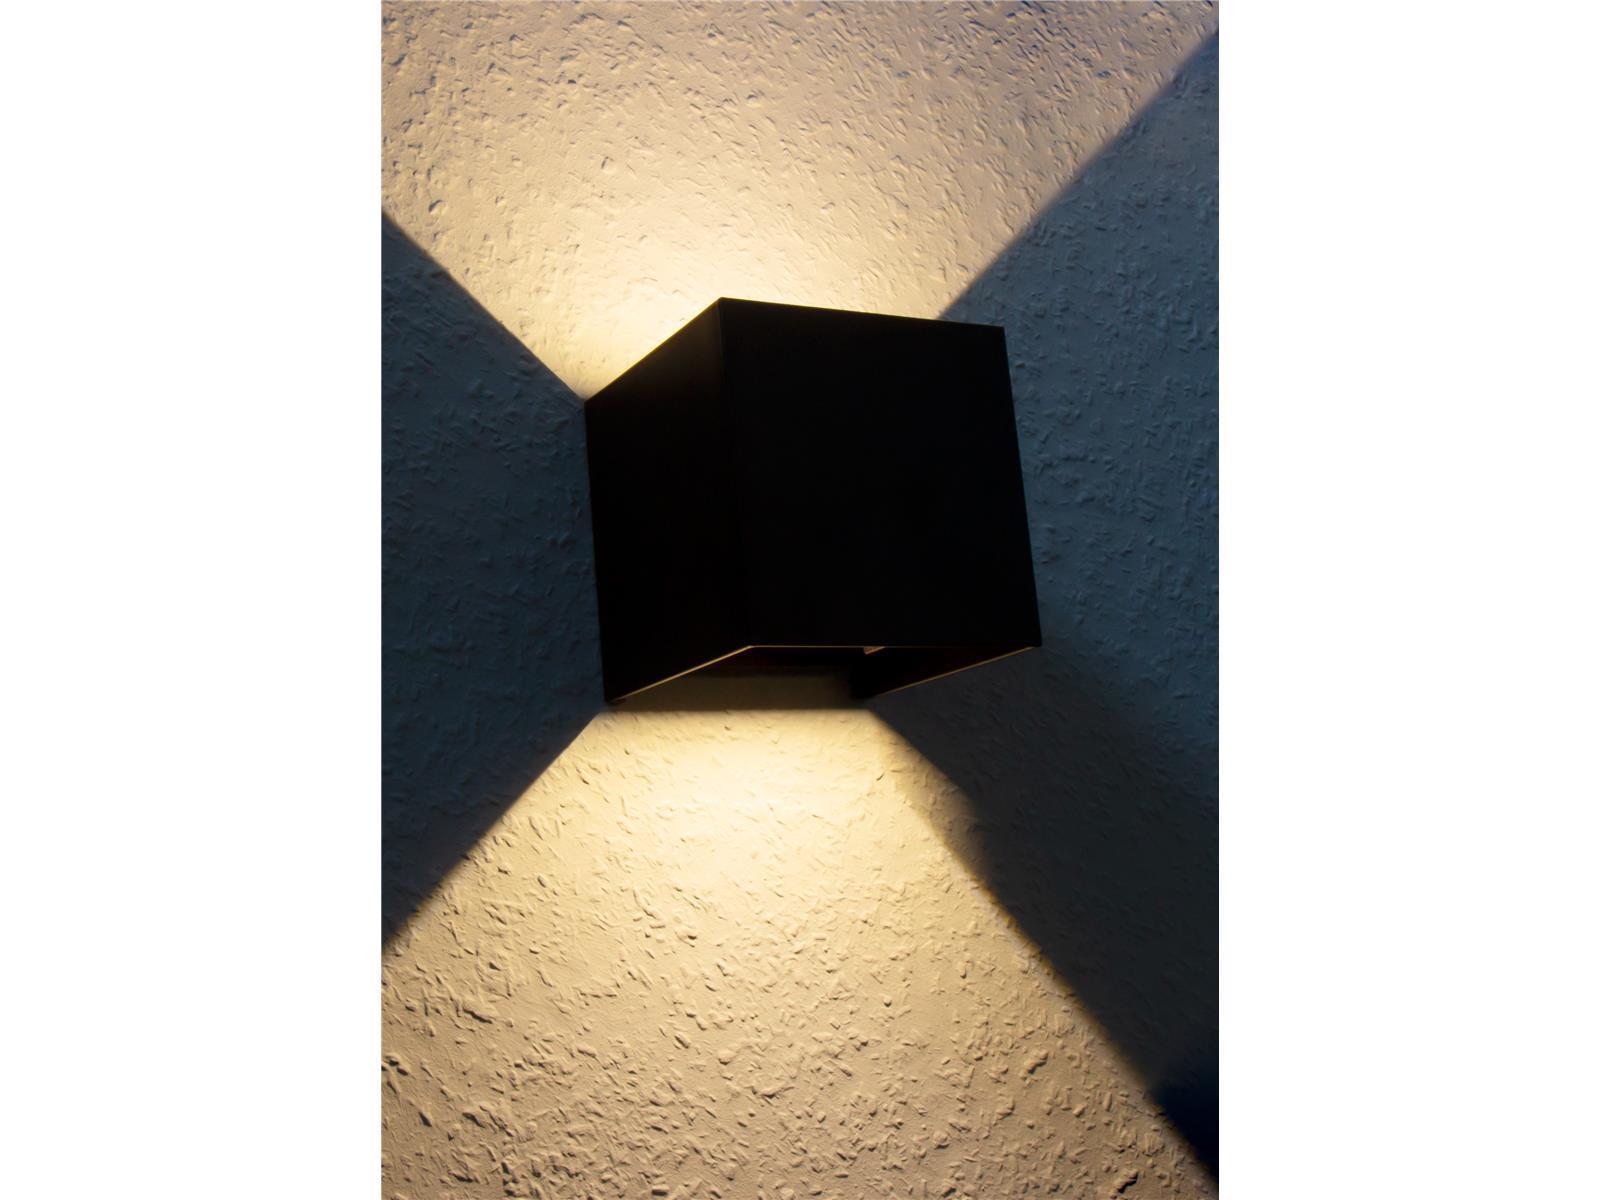 LED-Wandleuchte McShine ''LW-107'' IP54, 300lm, 6W, 3000K, warmweiß, schwarz